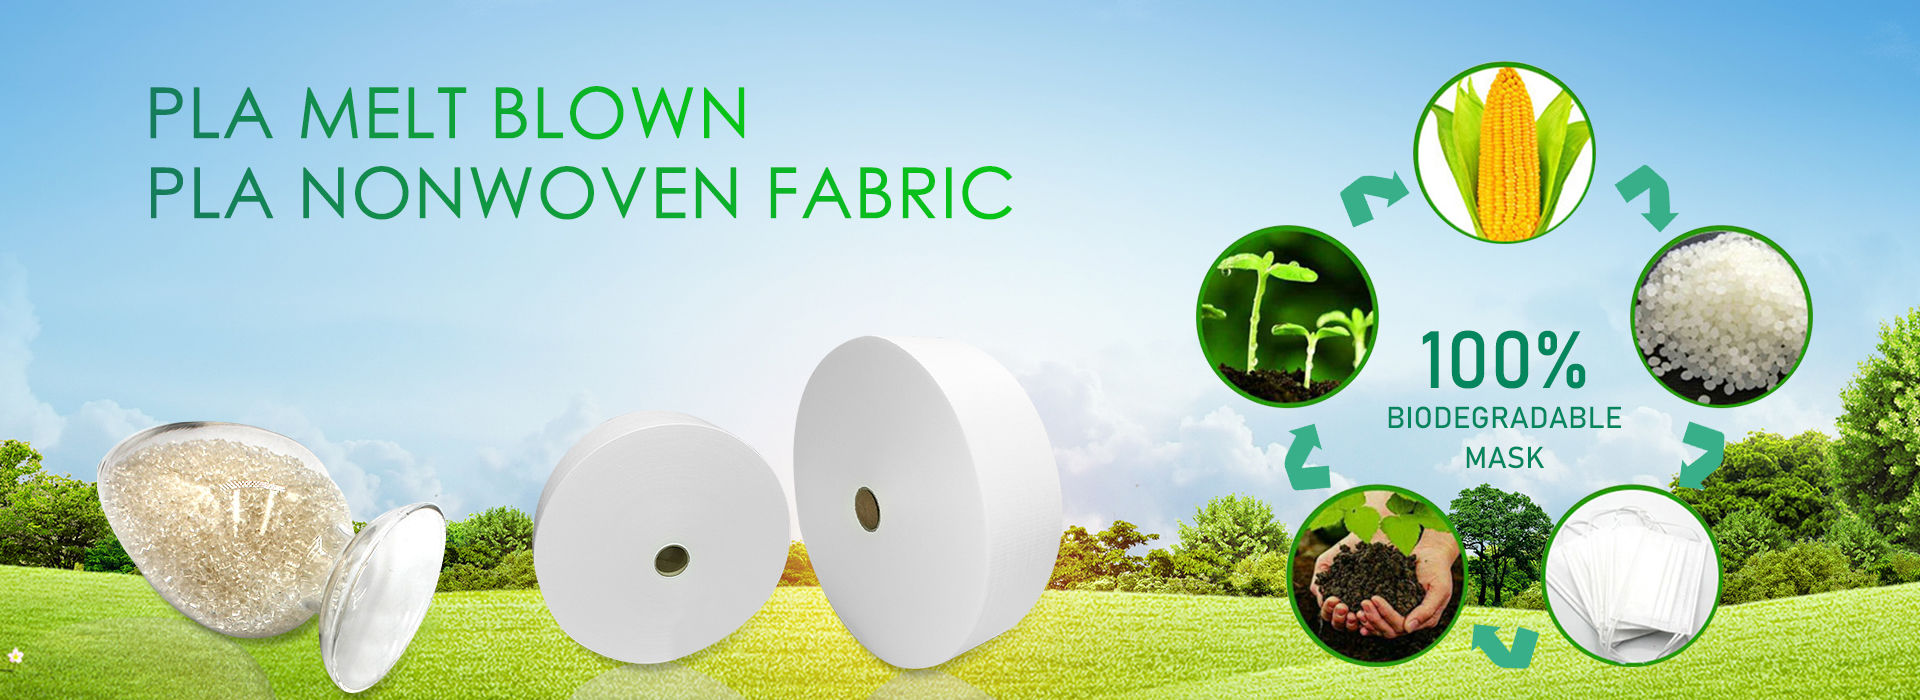 PLA Nonwoven Fabric